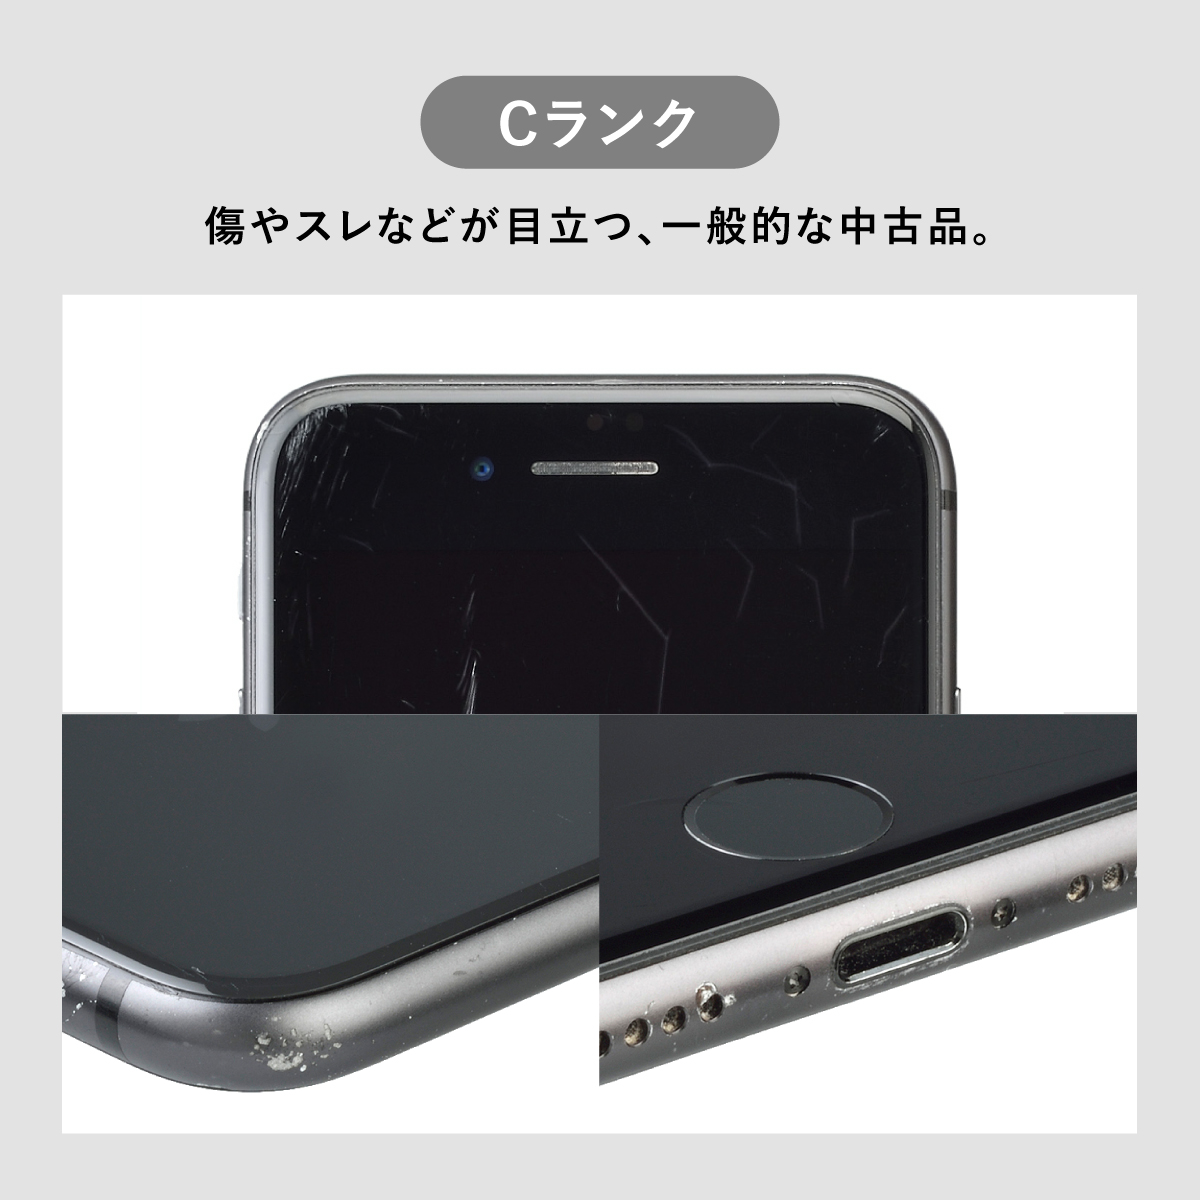 【楽天市場】iPhone 7 128GB 中古 スマホ スマートフォン 本体 SIM 